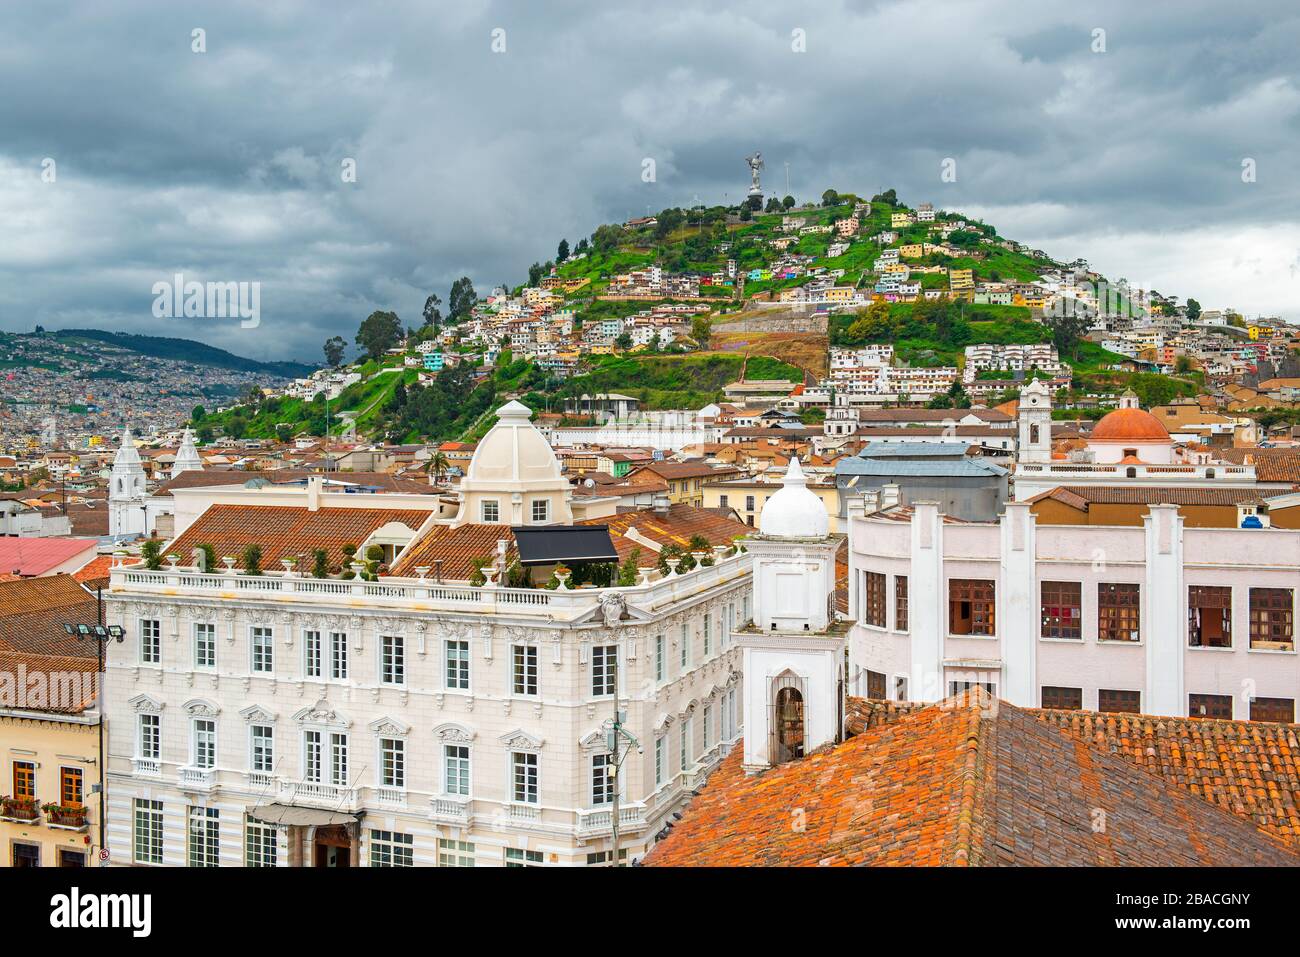 Paysage urbain de Quito avec le centre historique de la ville dans l'architecture de style colonial et la colline de Panecillo avec la Vierge de Quito, Equateur. Banque D'Images